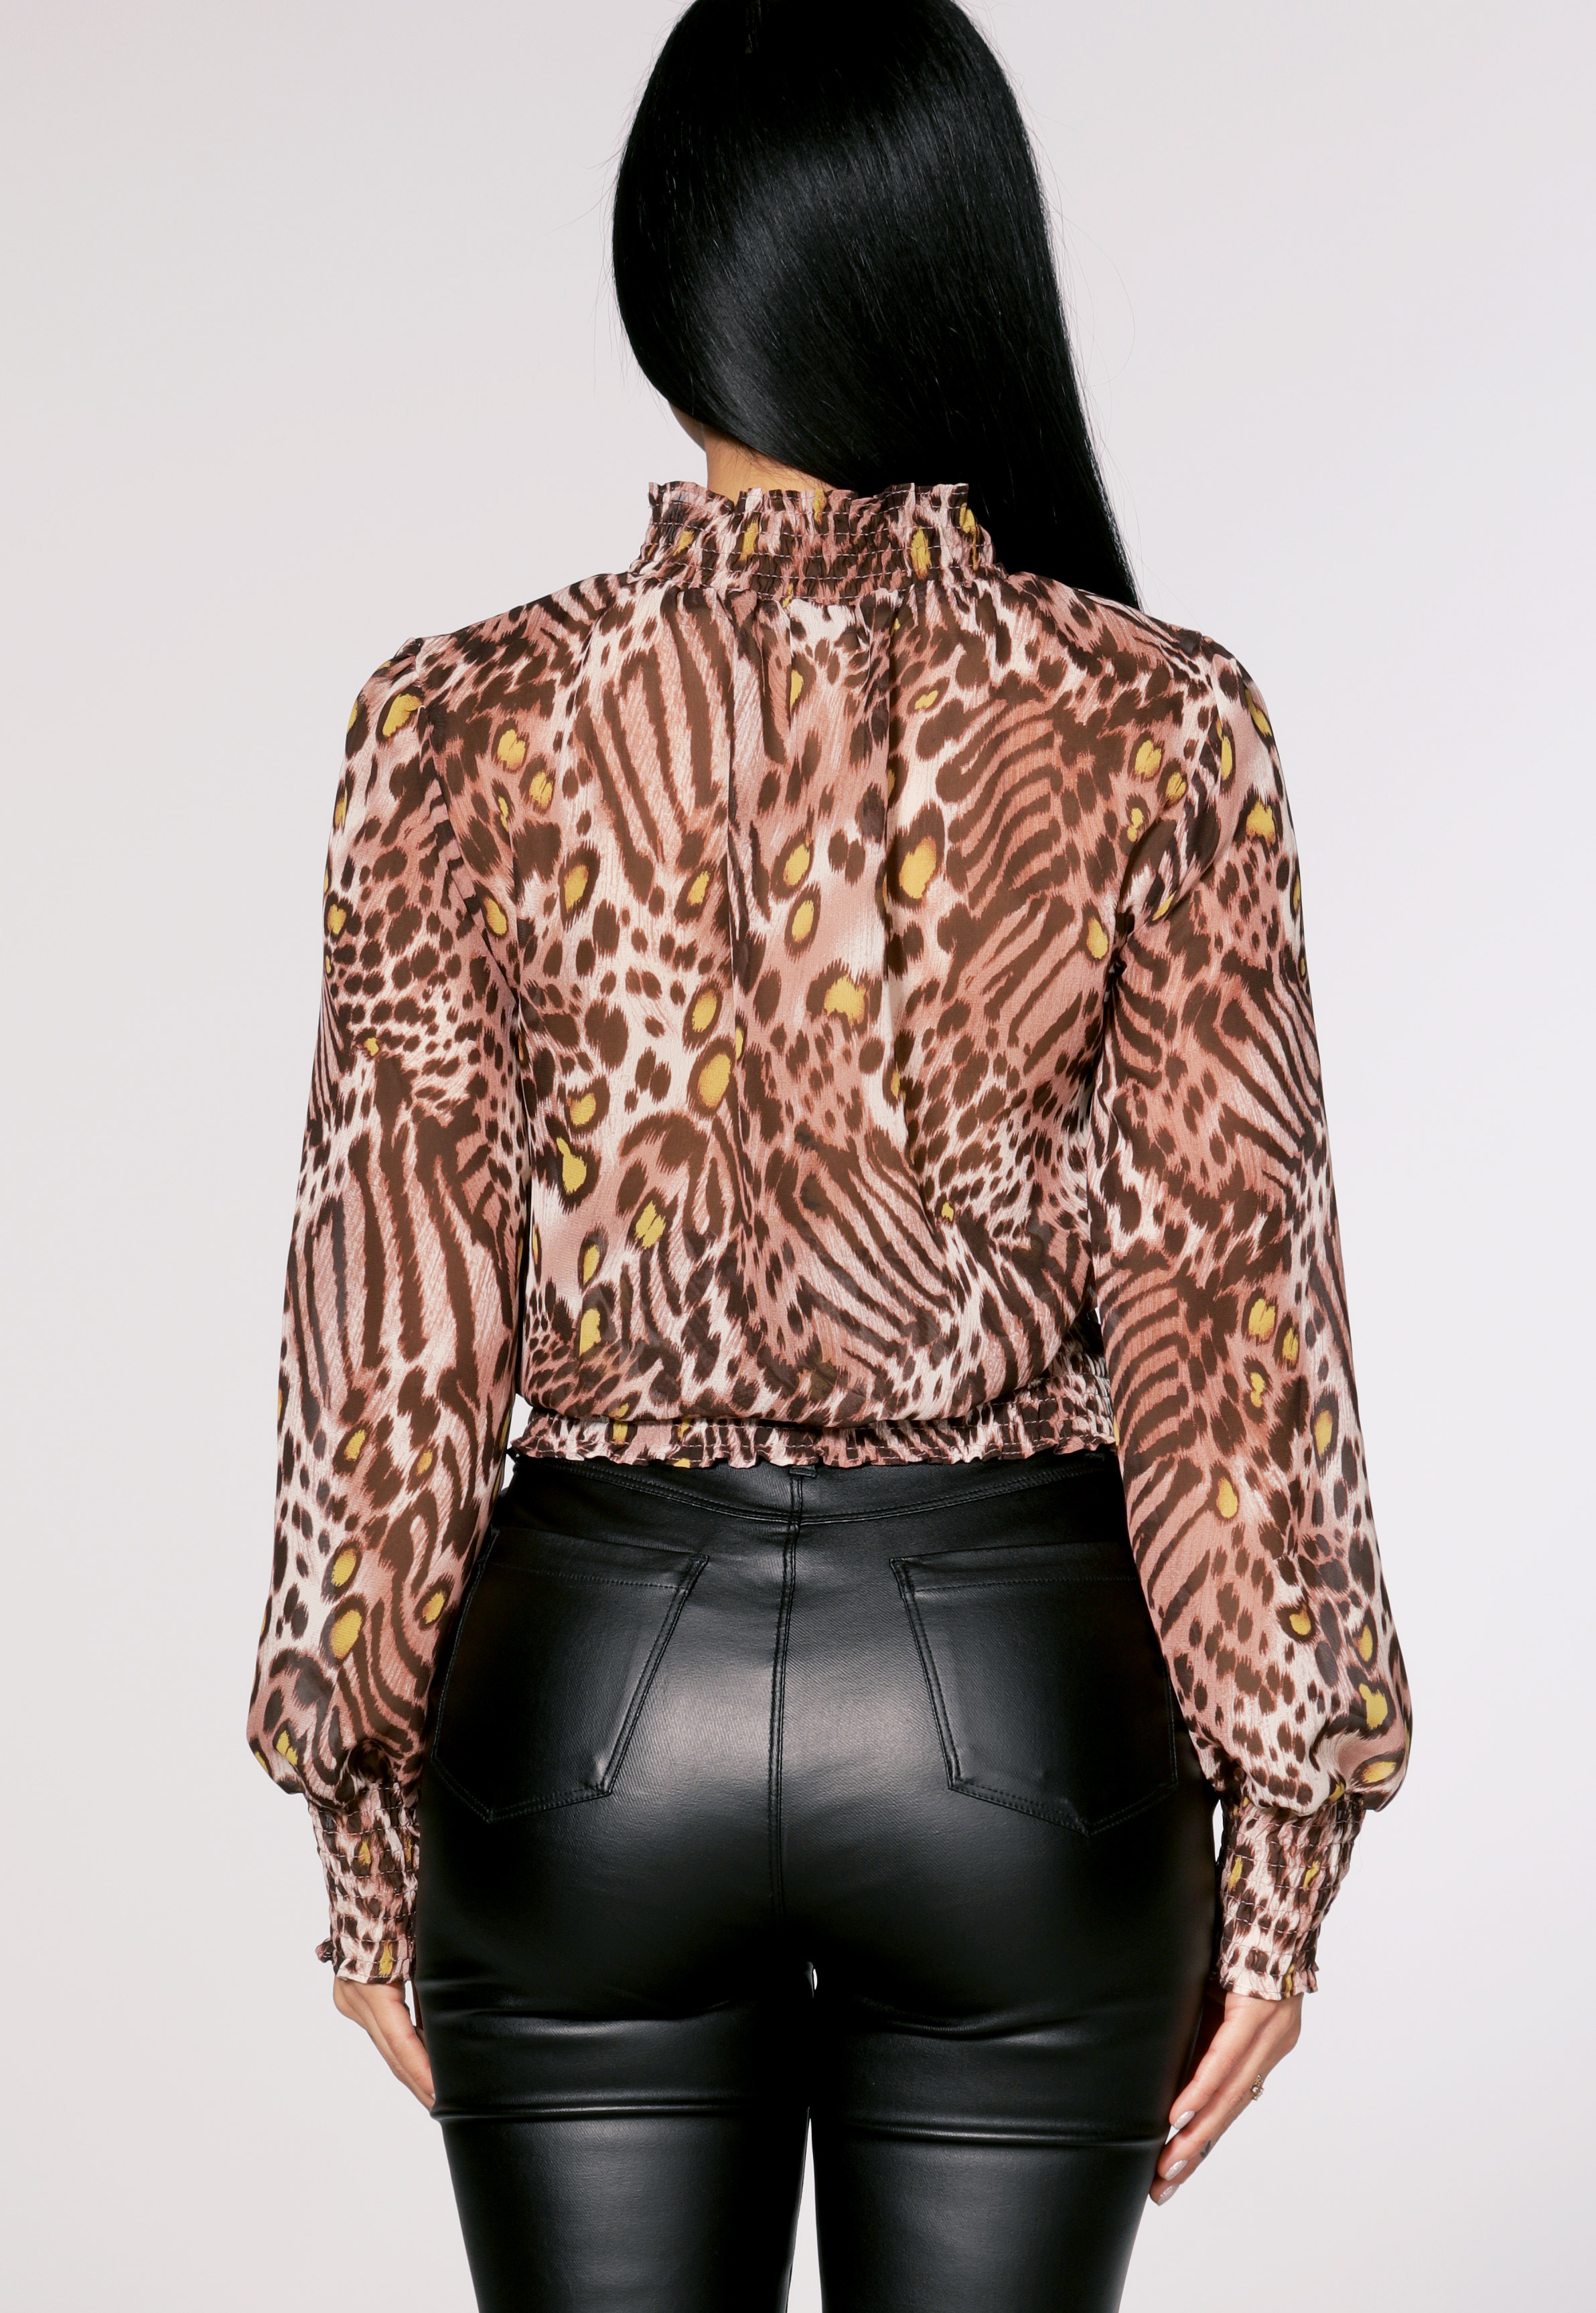 Leopard Print Dressy Top